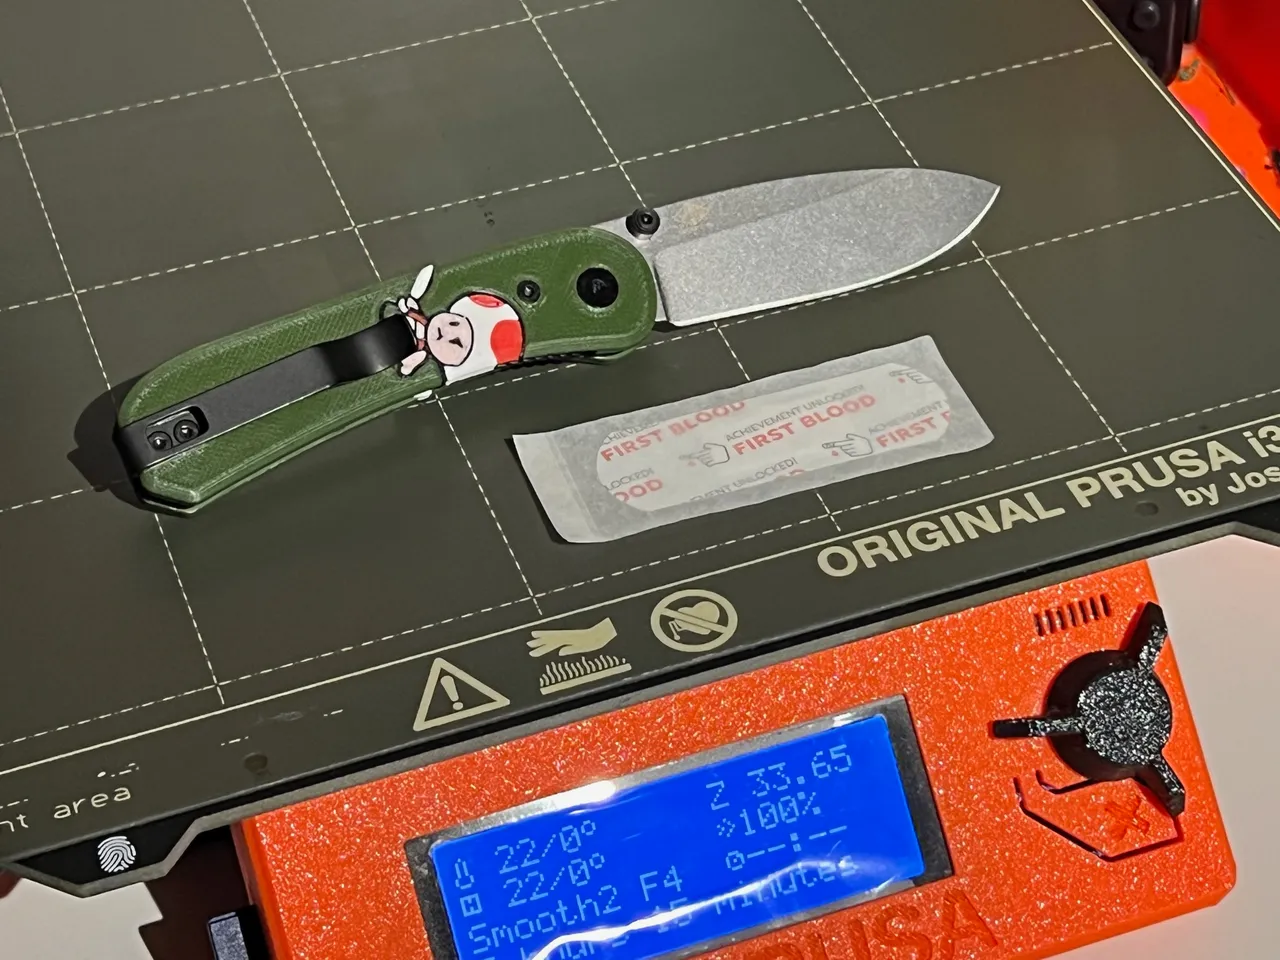 Knafs Lander Pocket Knife Scales by Ben Banters, Download free STL model